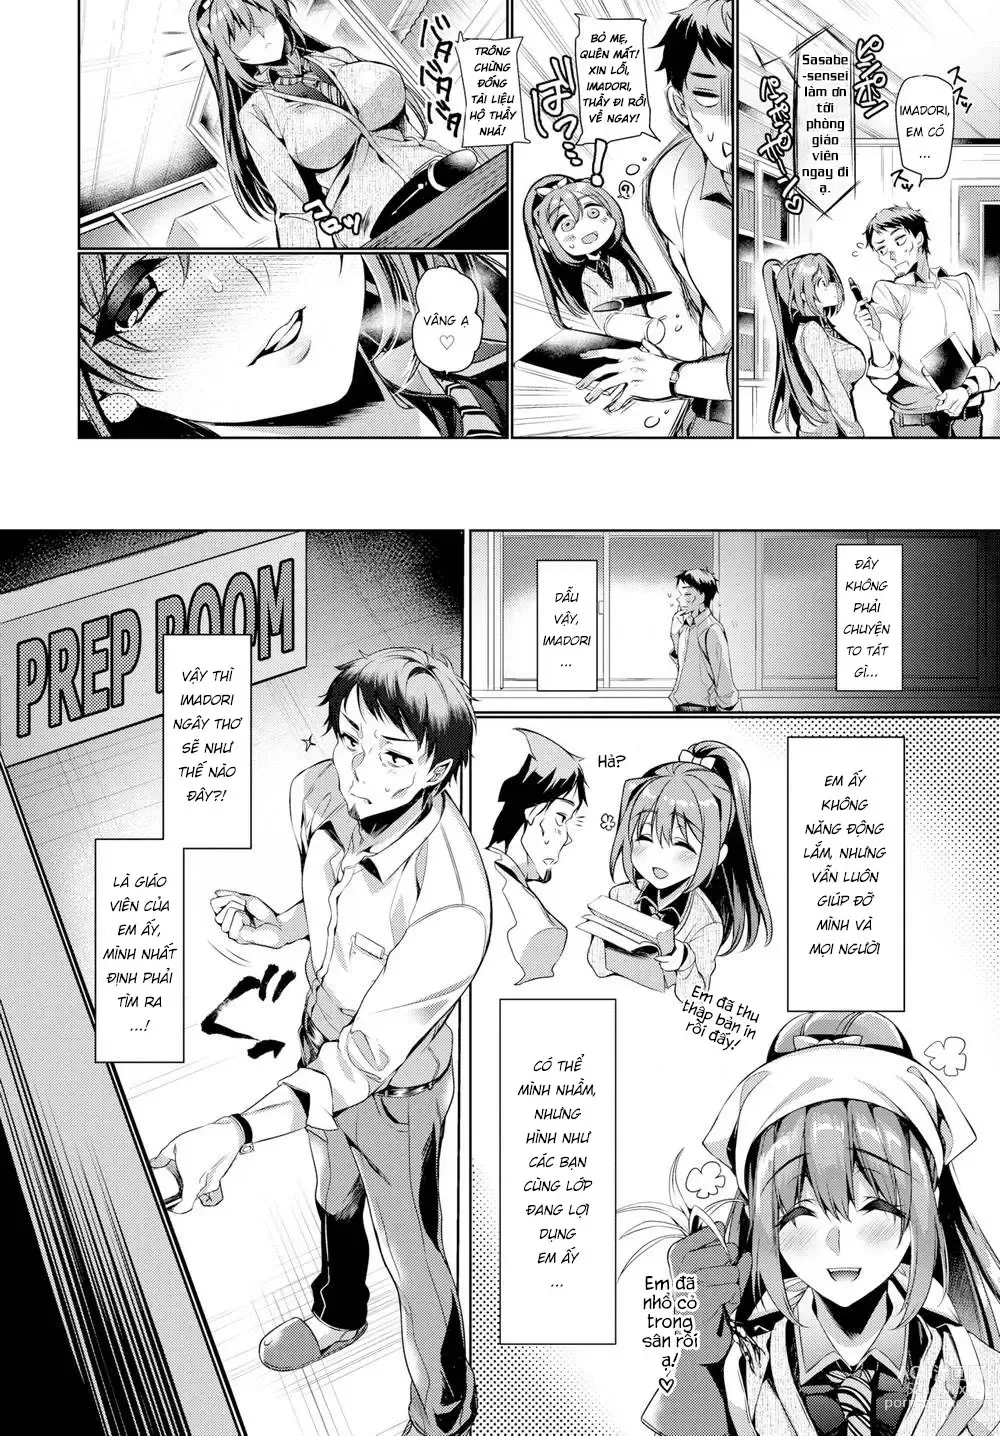 Page 6 of doujinshi Xin hãy chú ý đến tình cảm của em đi, Sensei!